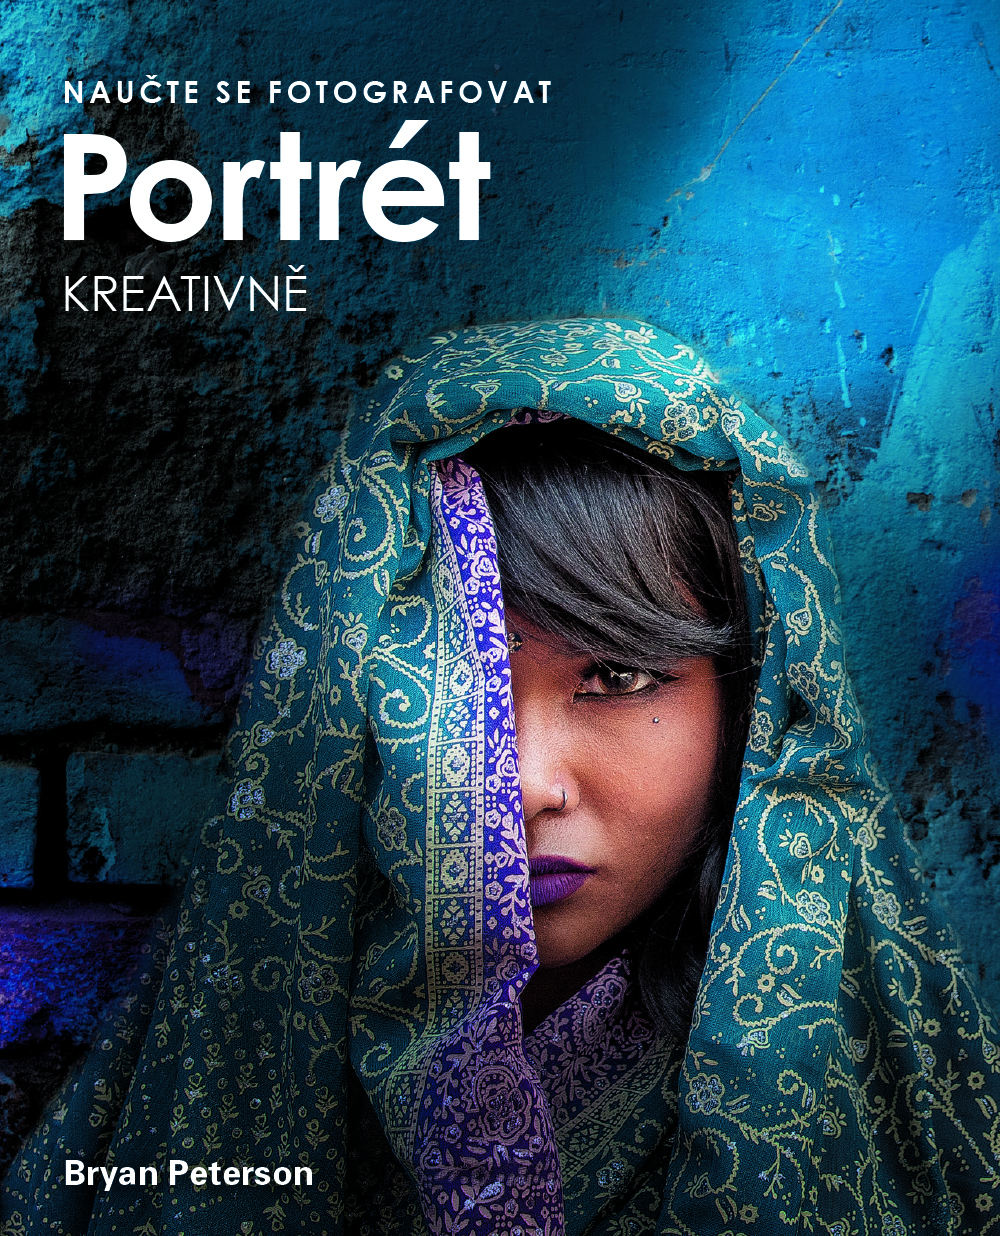 Bryan Peterson – Naučte se fotografovat portrét kreativně